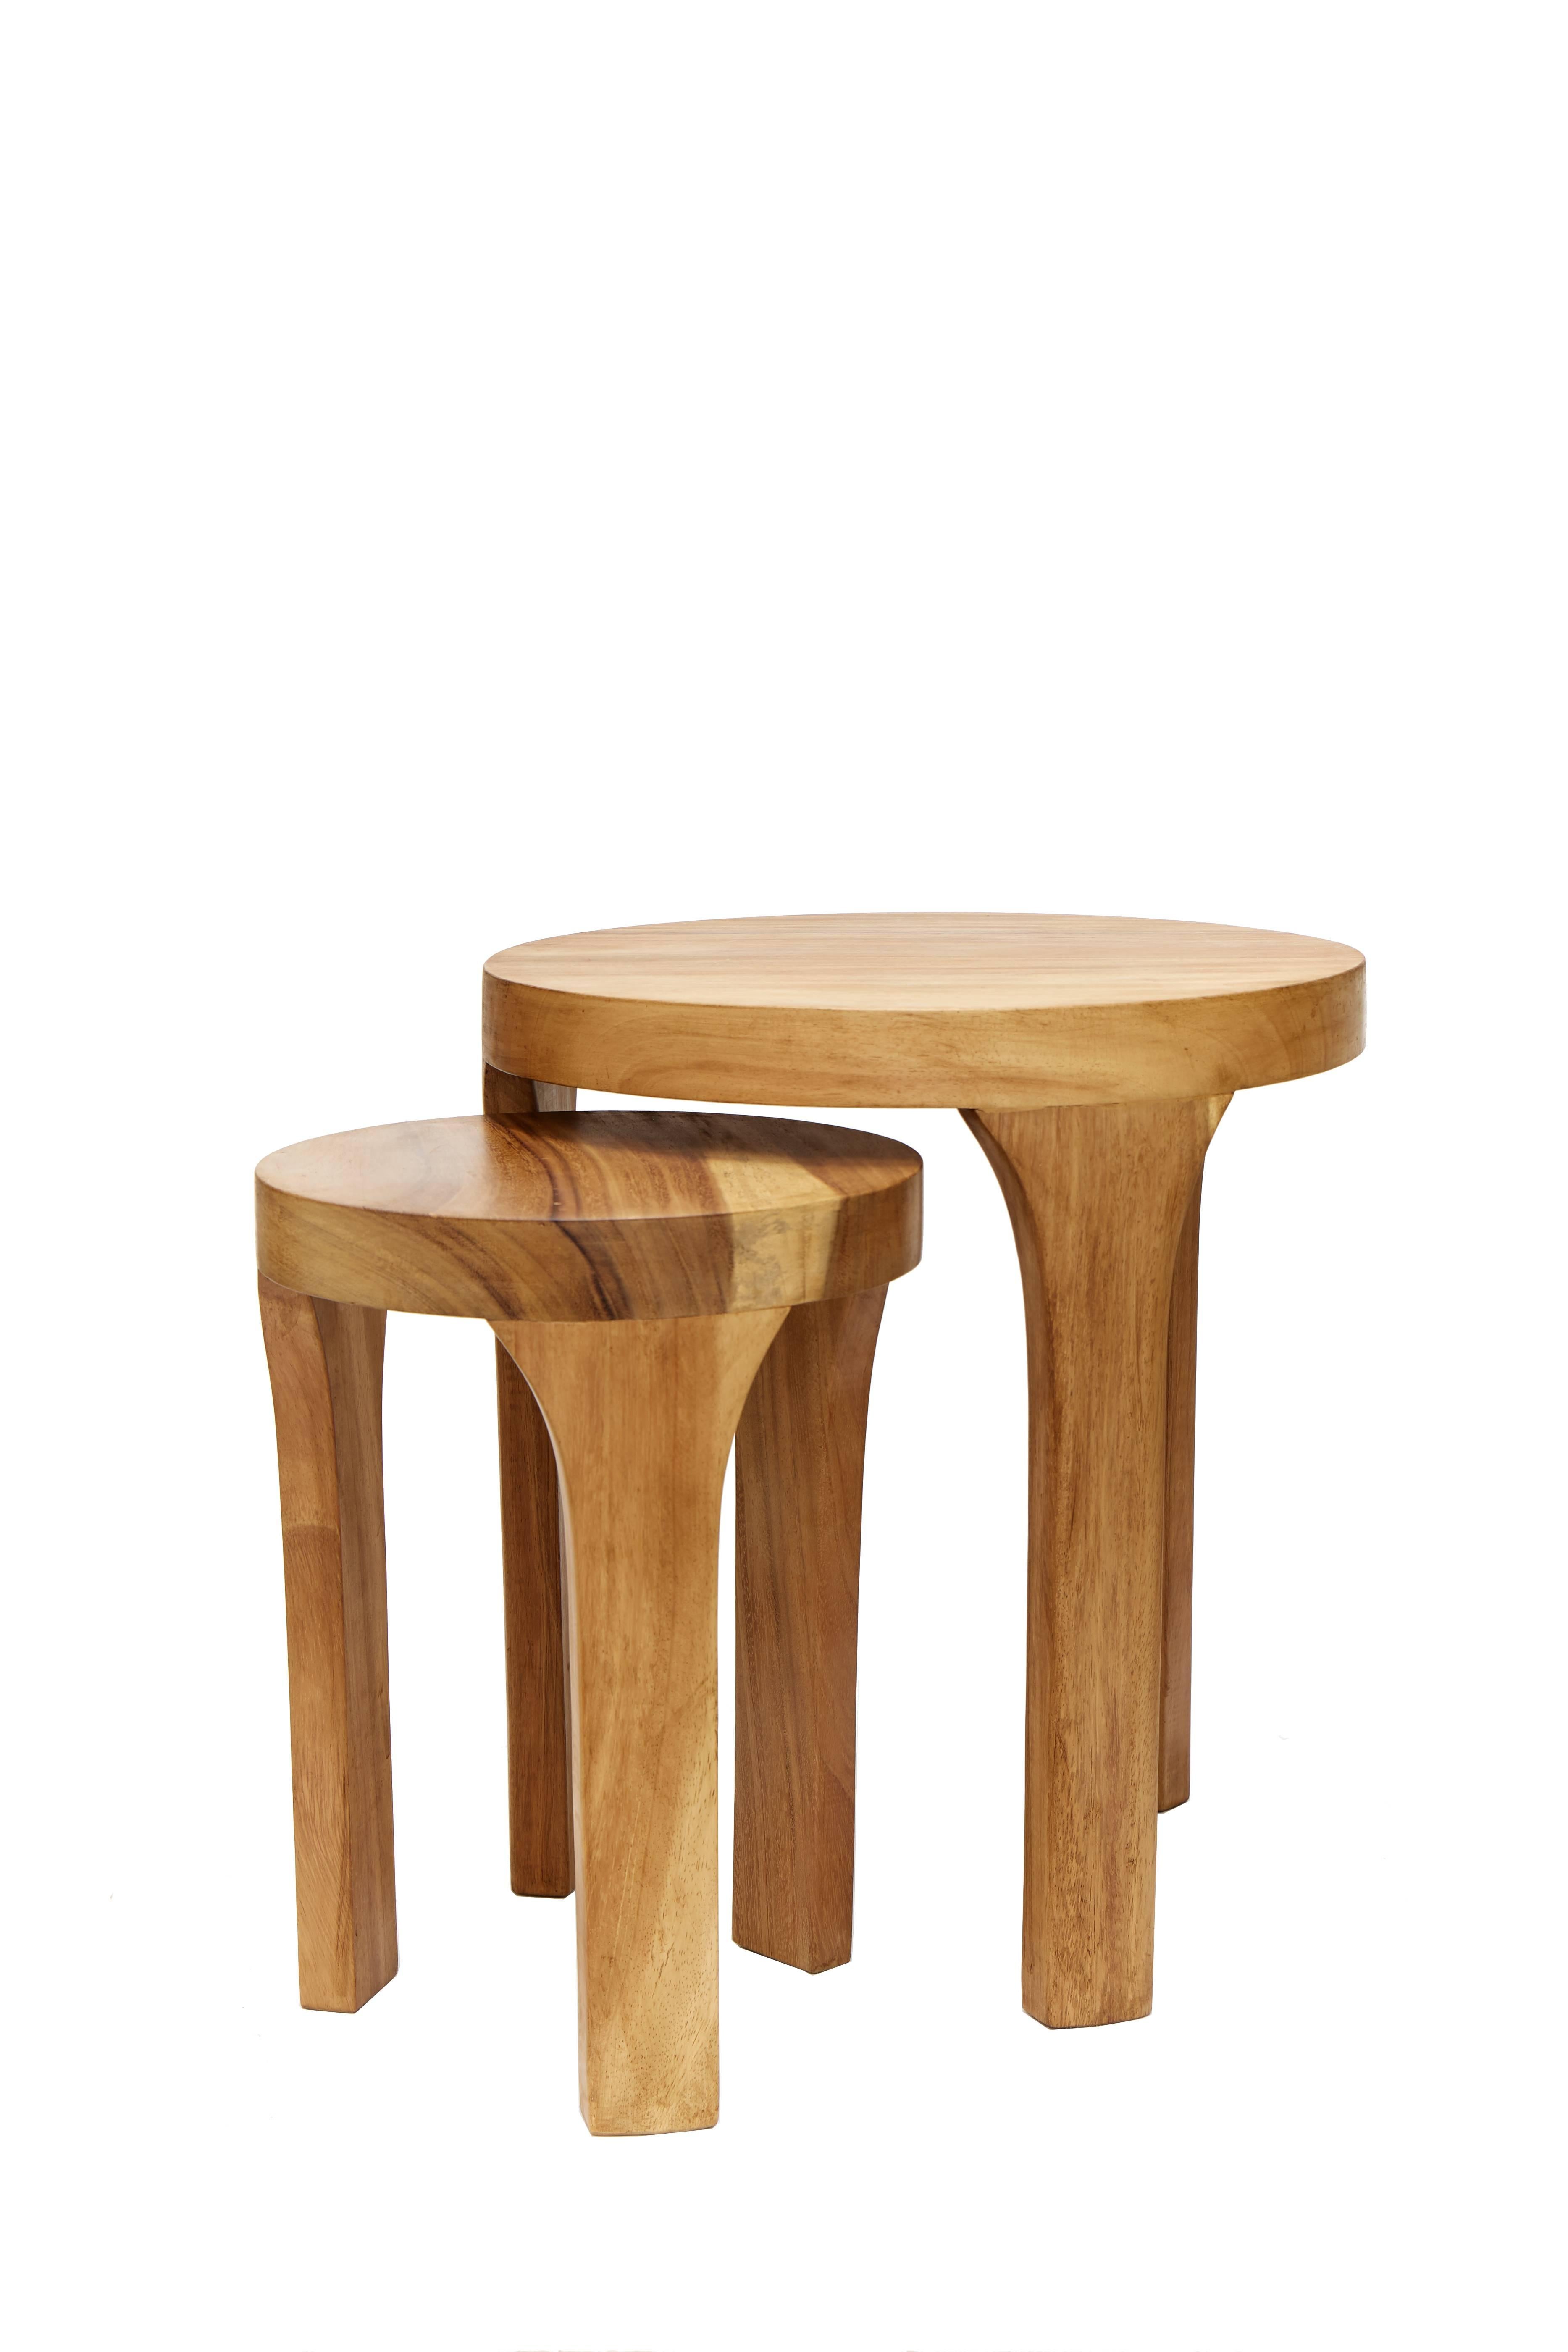 Cet ensemble de deux tables centrales Marcelo, fabriquées à la main, est une création unique de Leon Design de Mexico. Tous deux sont fabriqués en bois de parota tropical massif et sculptés à la main.

Dimensions :
Grande table : diamètre 50 cm /